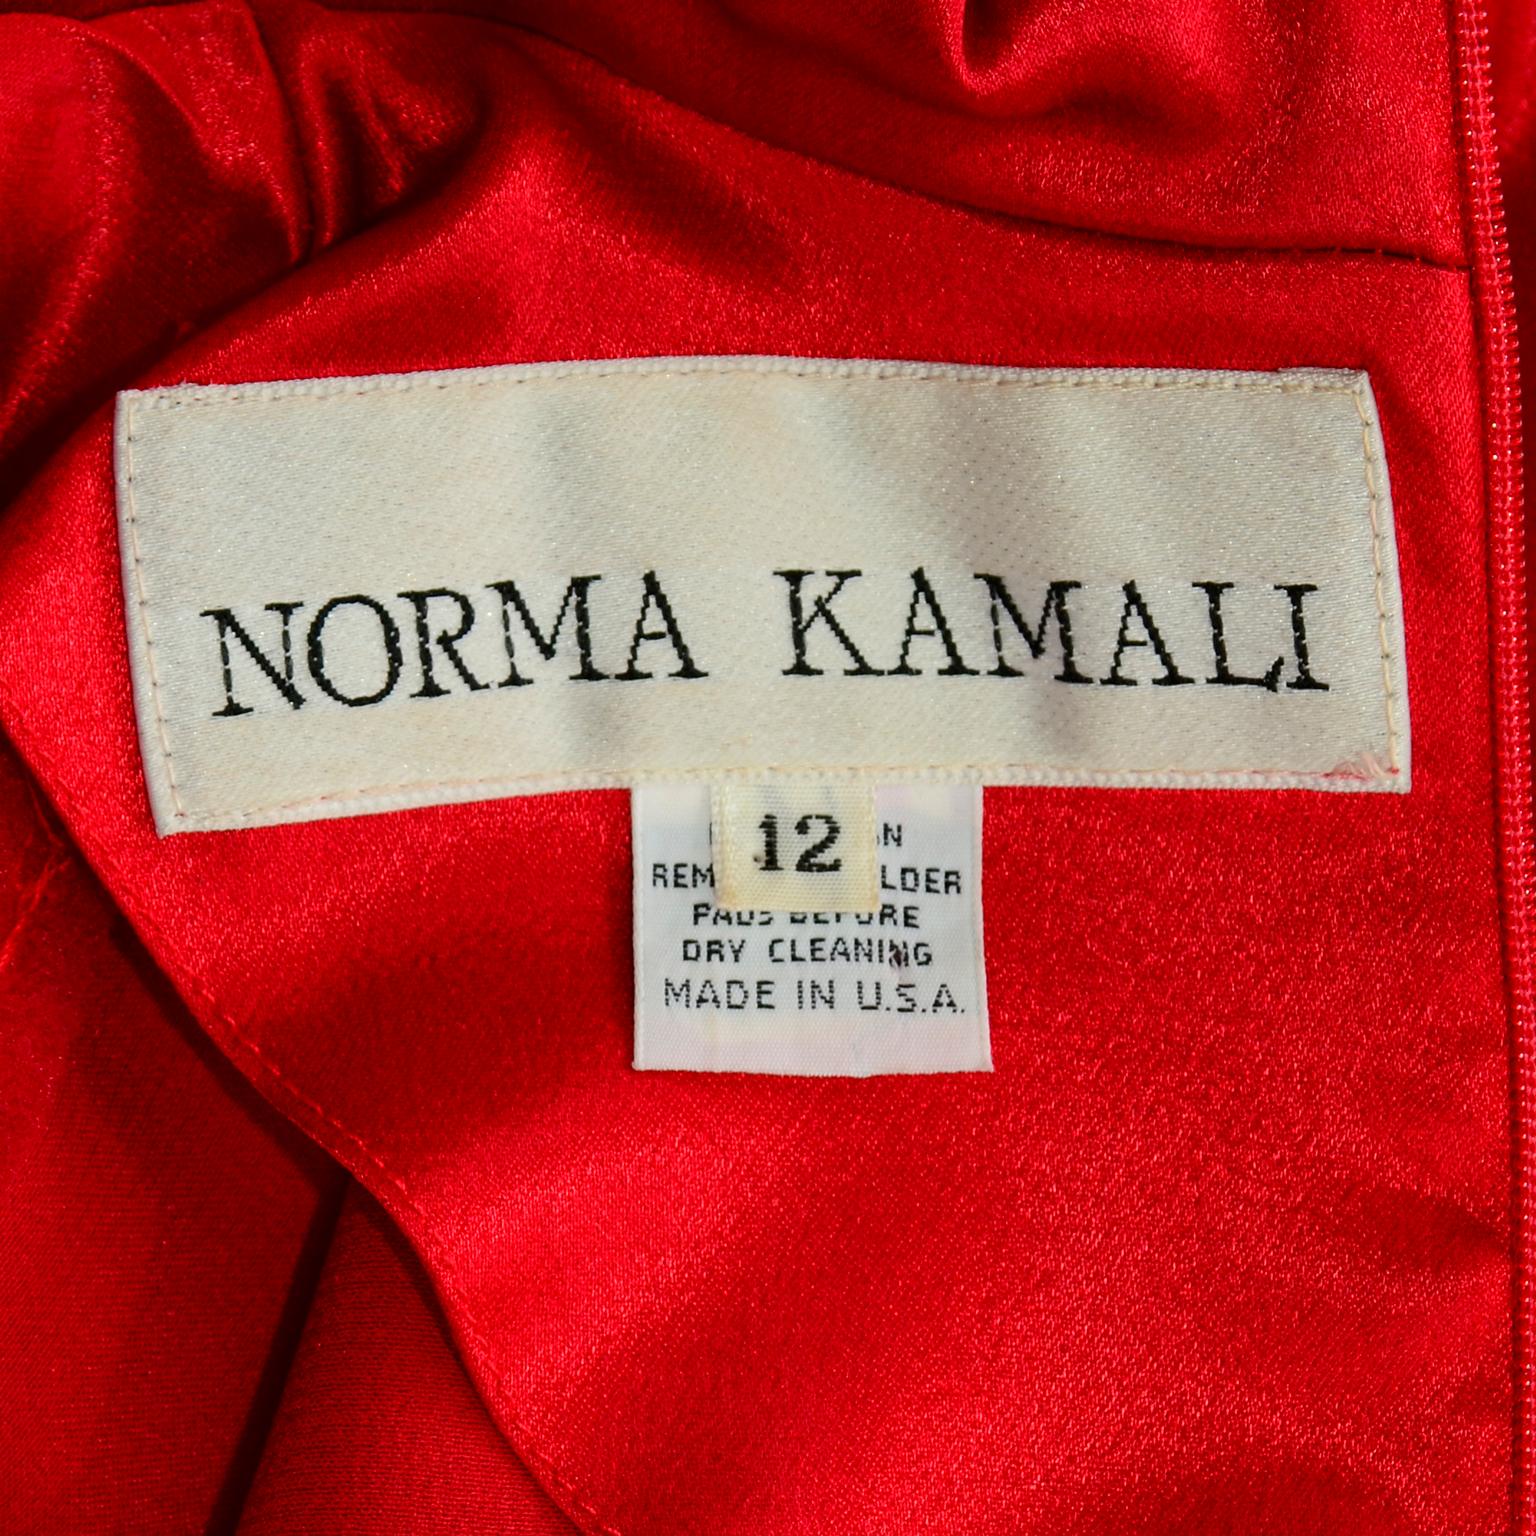 Wir lieben die Vintage-Stücke von Norma Kamali und dieser rote Satin-Jumpsuit ist einfach umwerfend! Dieser Jumpsuit von Norma Kamali wäre eine wunderbare Alternative zum Abendkleid! Dieser fabelhafte einteilige Overall im Vintage-Stil hat eine